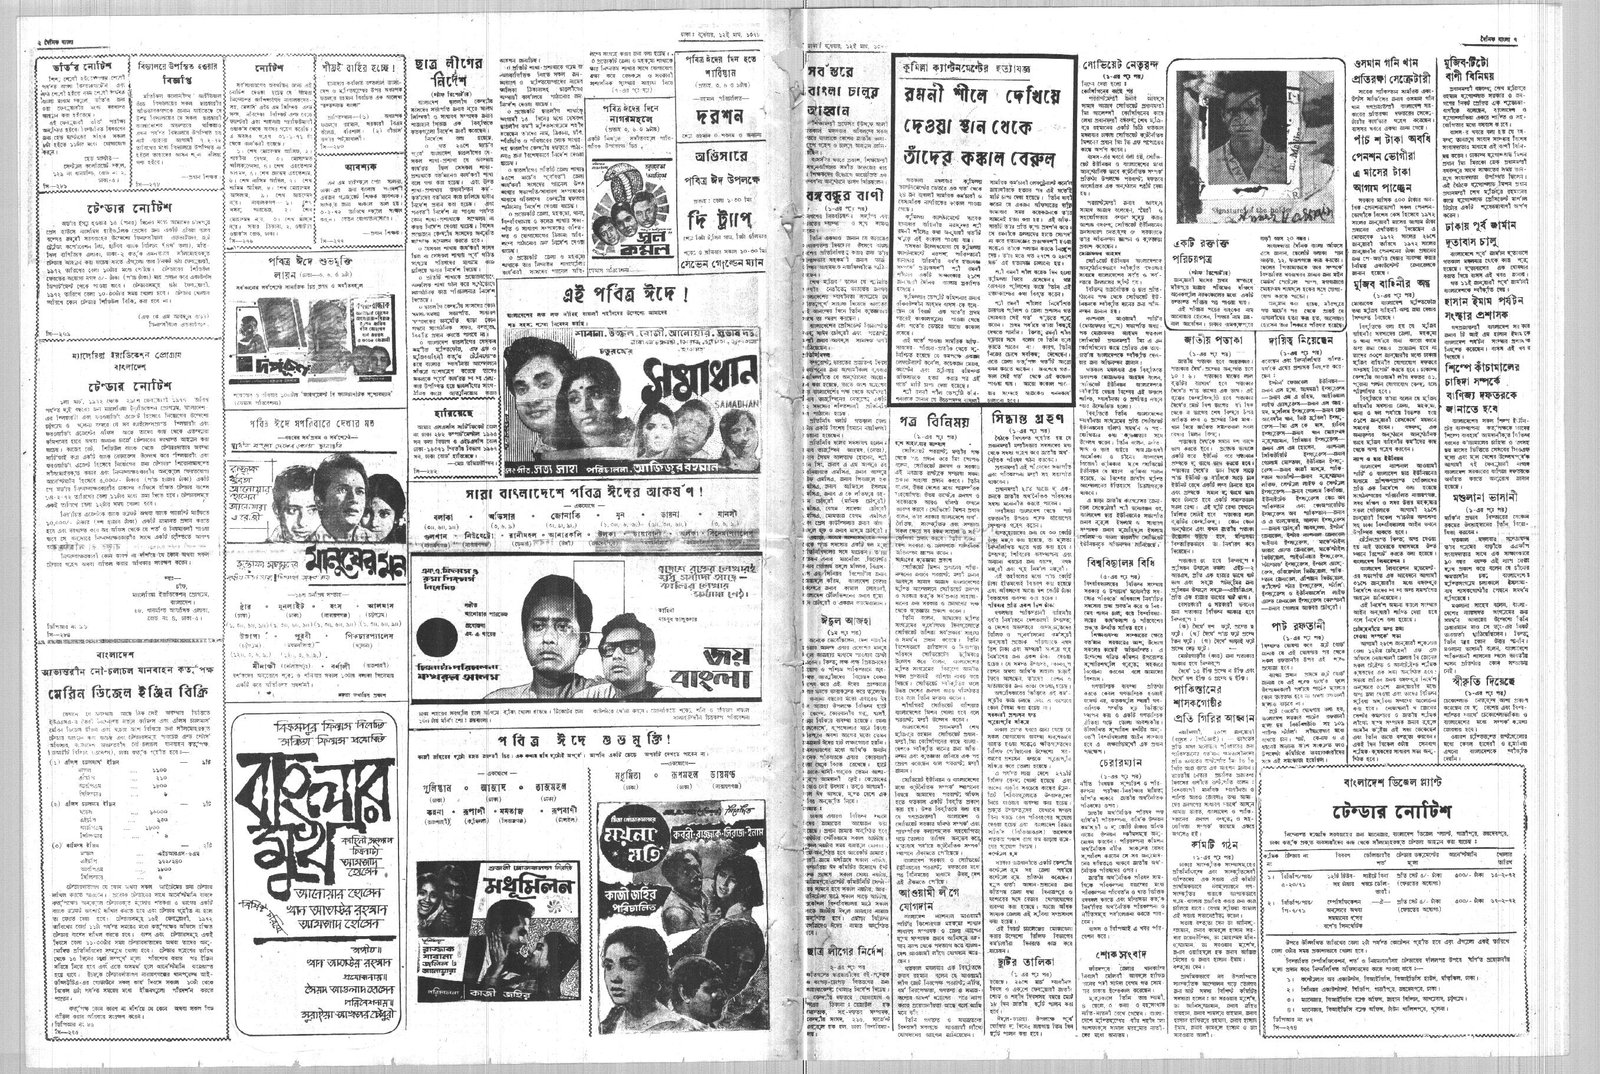 26JAN1972-DAINIK BANGLA-Regular-Page 2 and 7